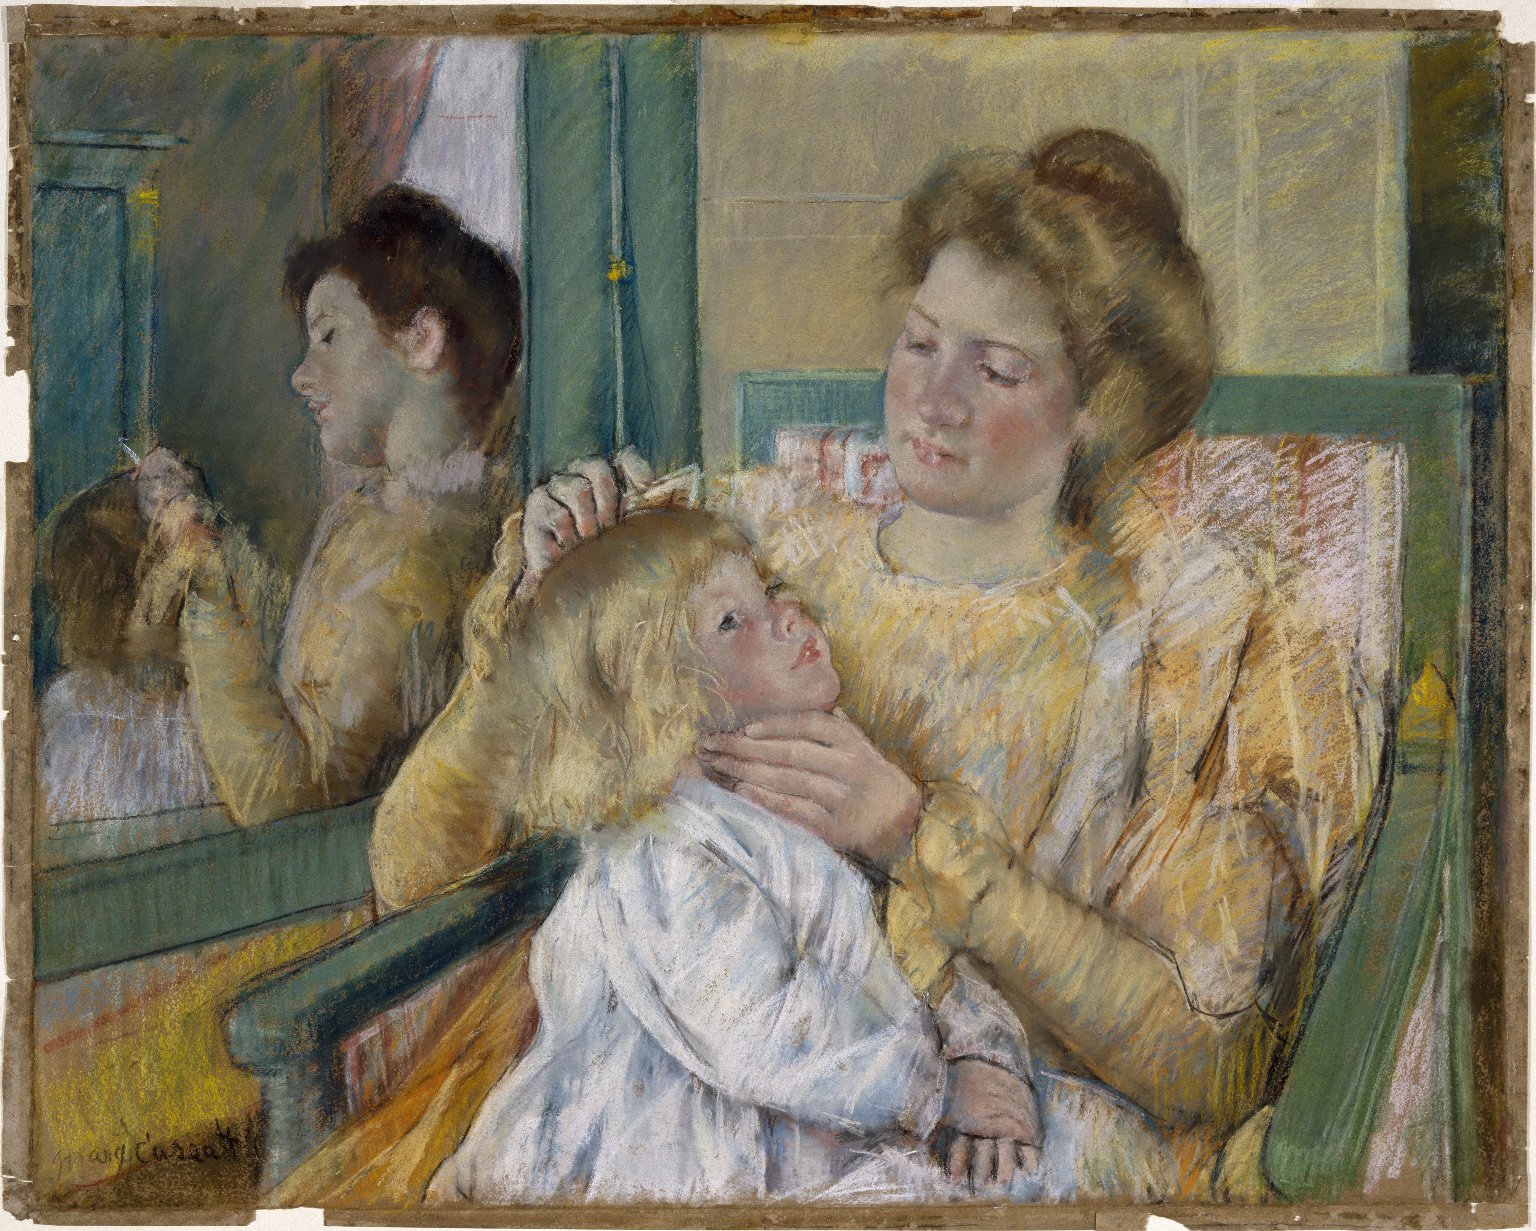 مادر در حال شانه زدن موهای فرزندش by Mary Cassatt - 1901 - 64.1 x 80.3 cm 